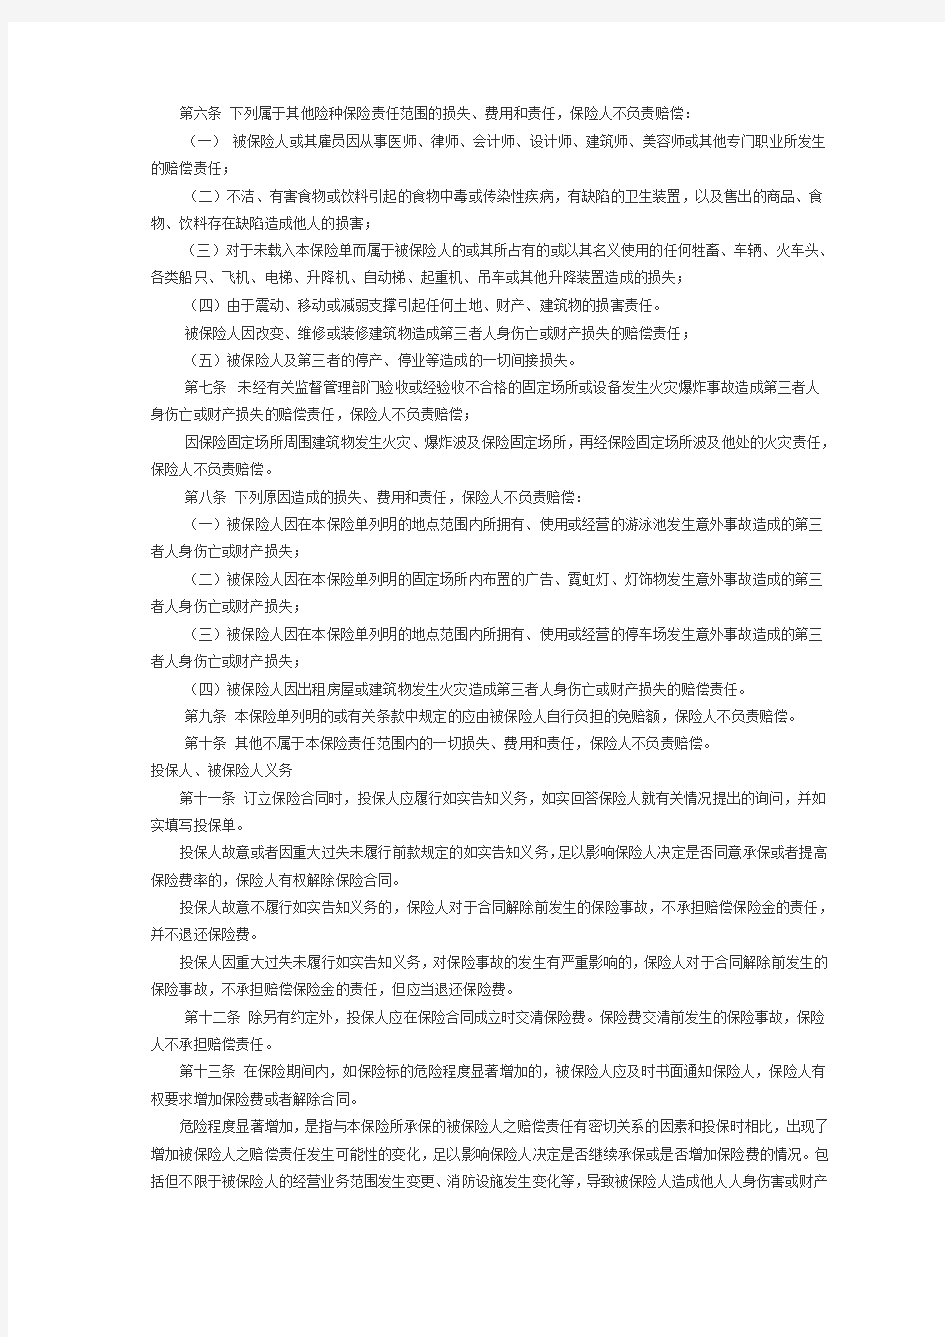 中国人民财产保险股份有限公司公众责任保险条款(1999版)